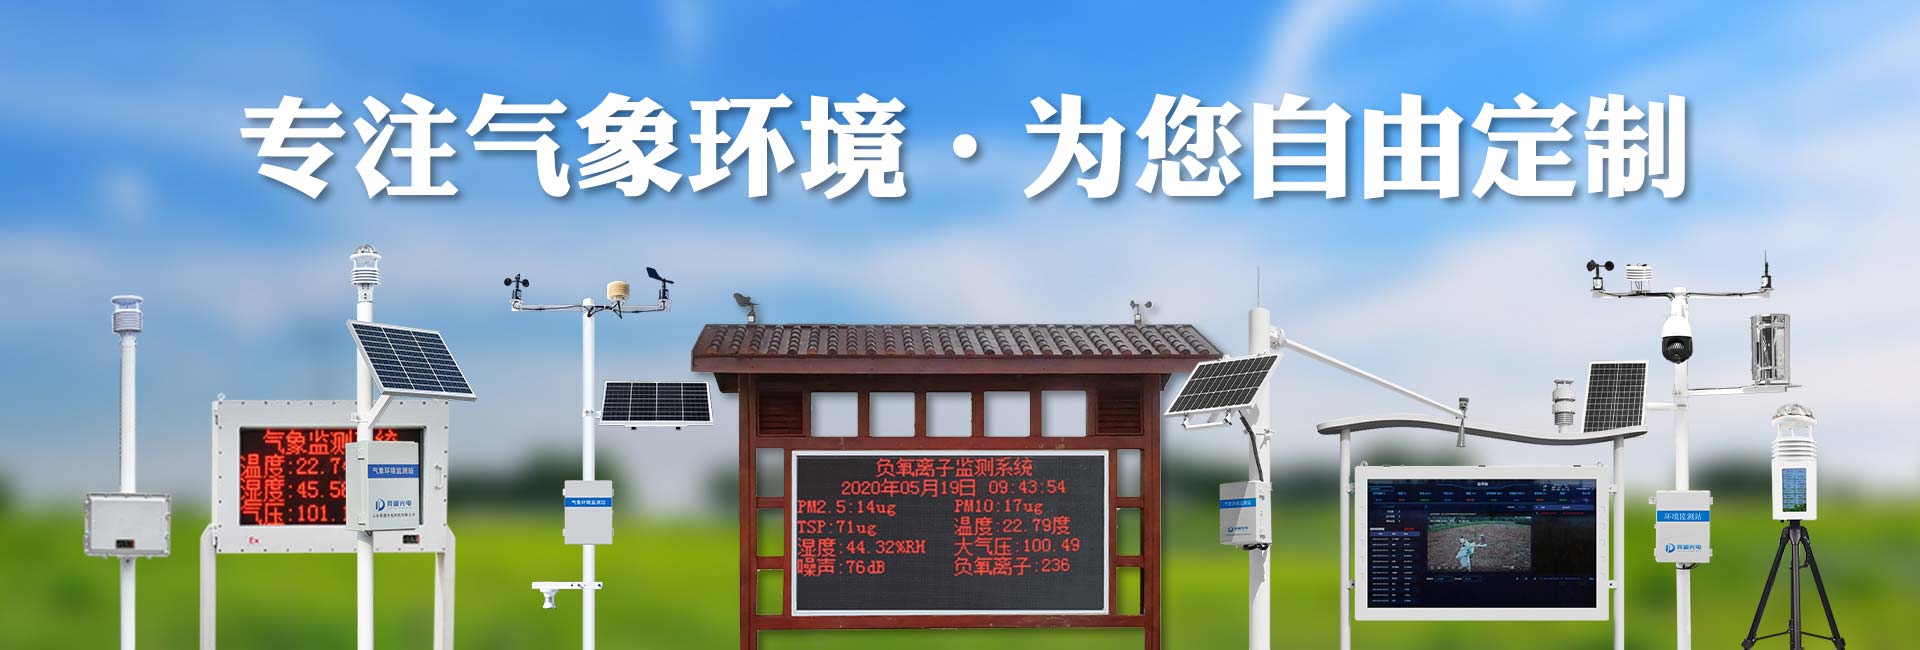 便携式自动气象站-山东竞道光电科技有限公司